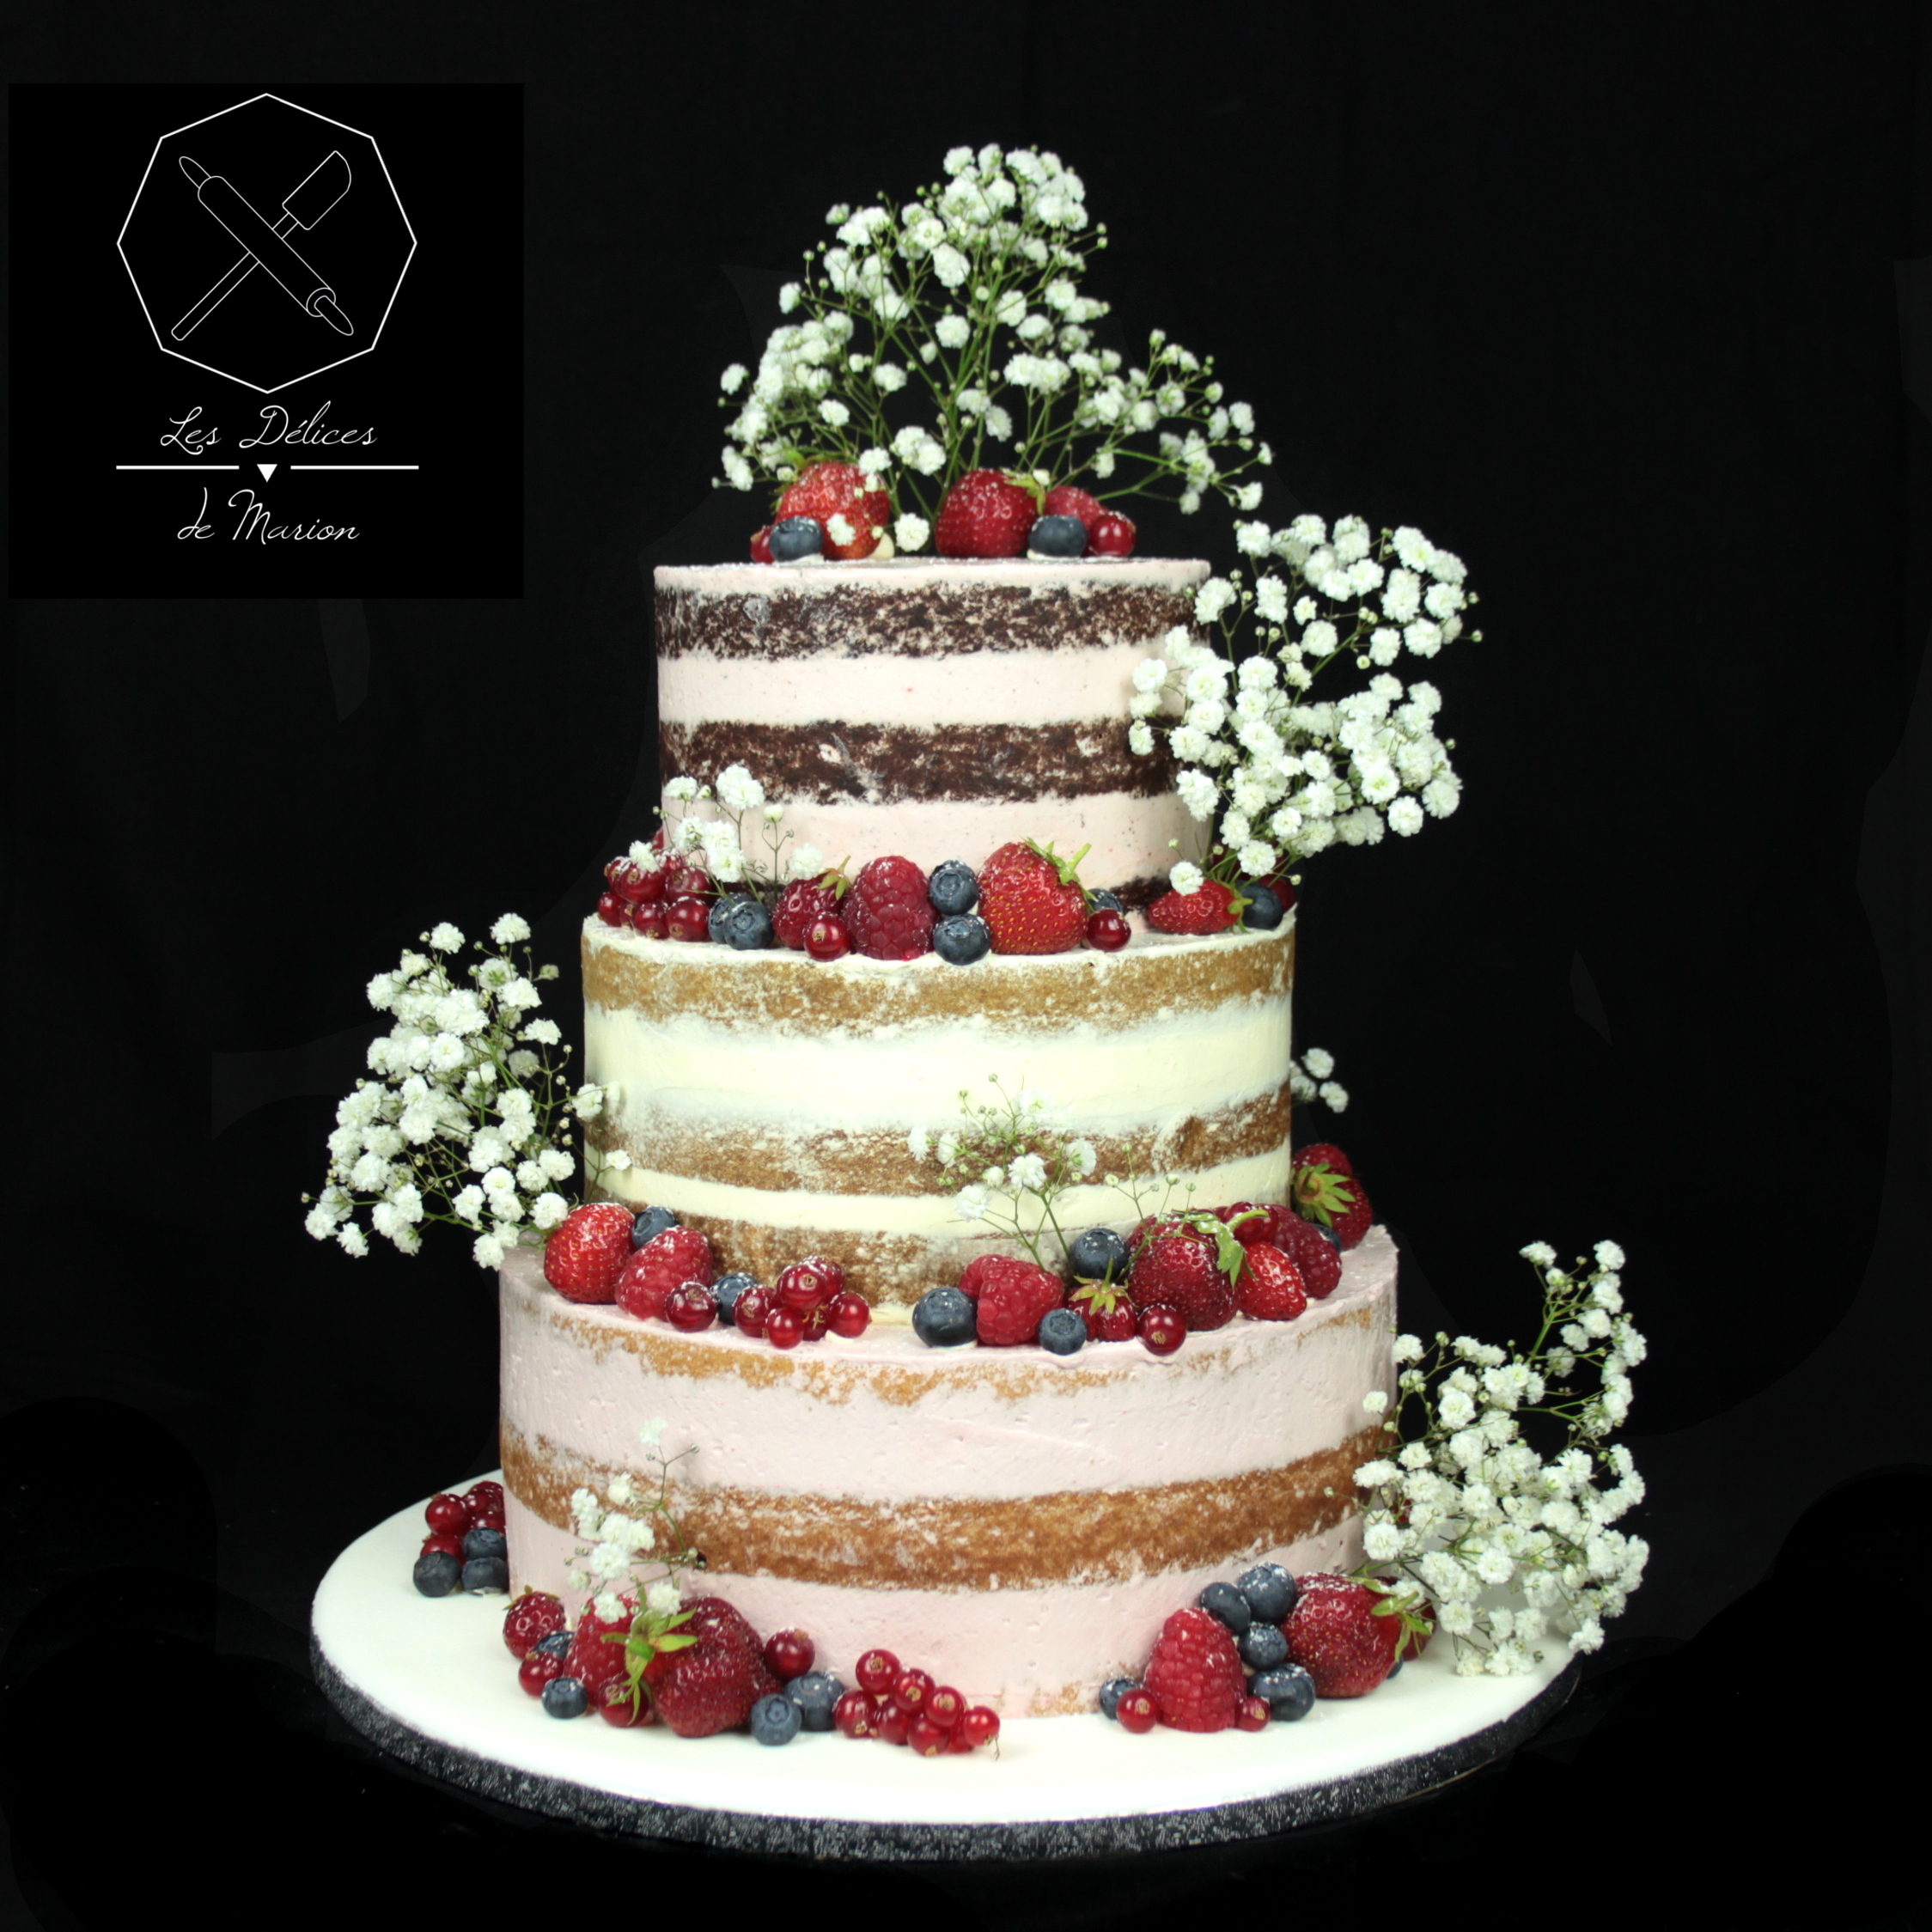 wedding_cake_gateau_mariage_semi-naked_gypsophile_fruits_rougesd_fraises_framboises_myrtilles_groseilles_cake-design_delices-marion